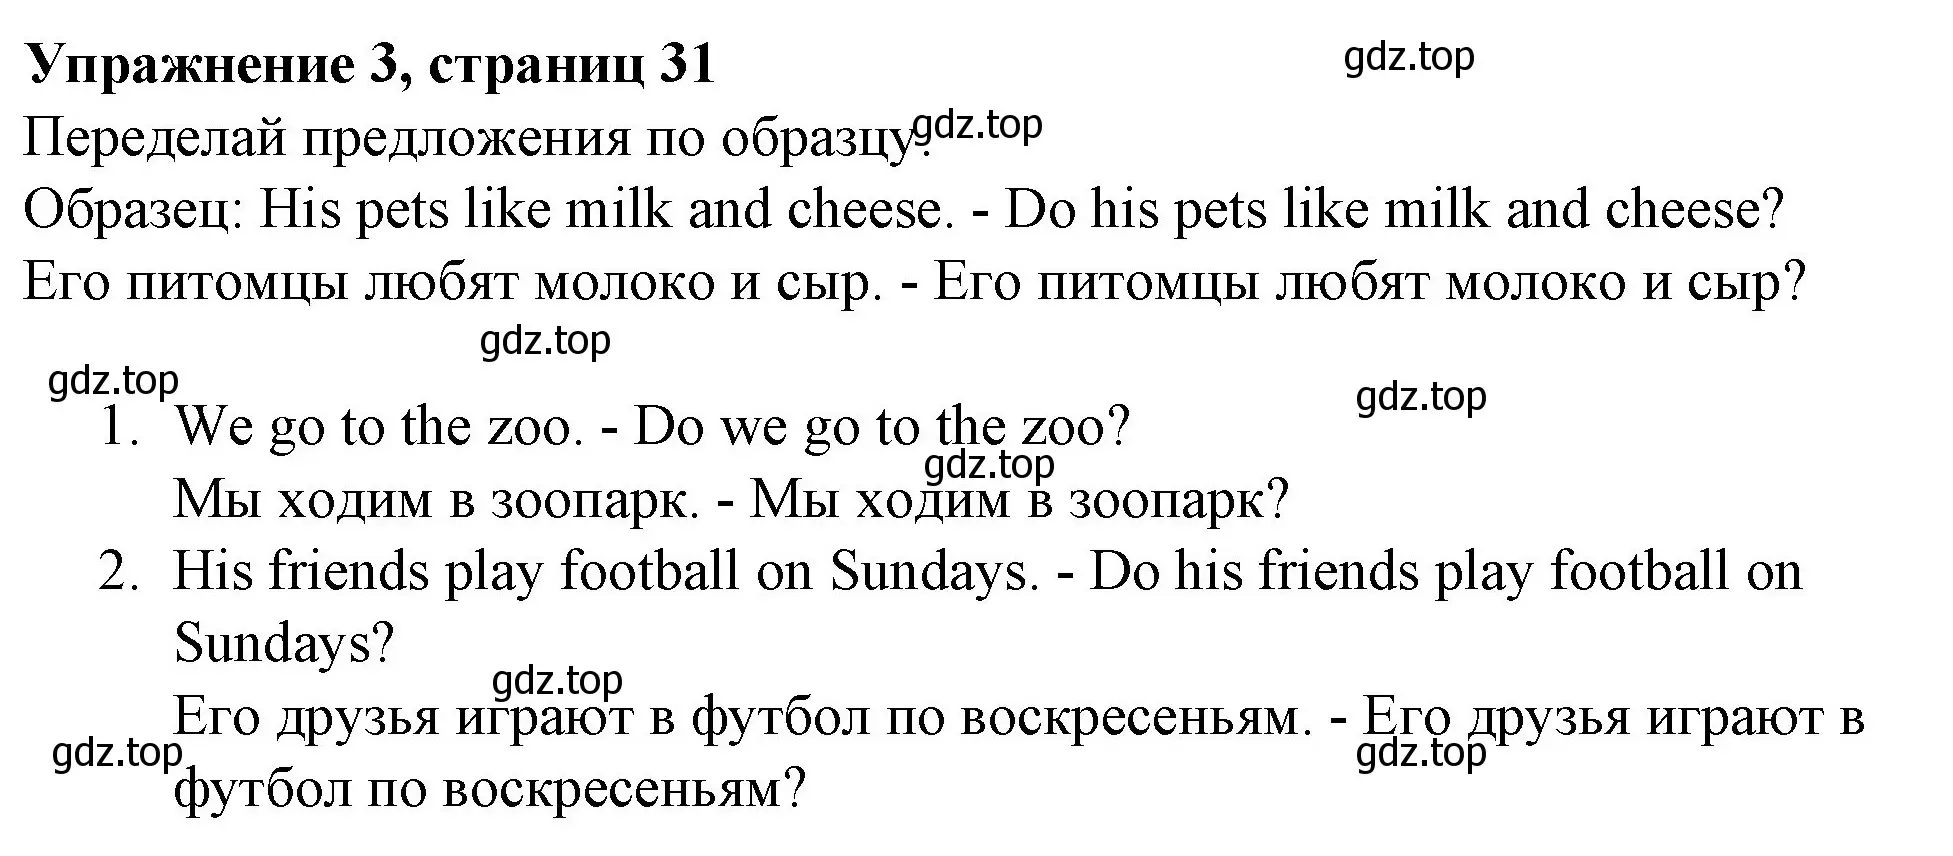 Решение номер 3 (страница 31) гдз по английскому языку 3 класс Биболетова, Денисенко, рабочая тетрадь